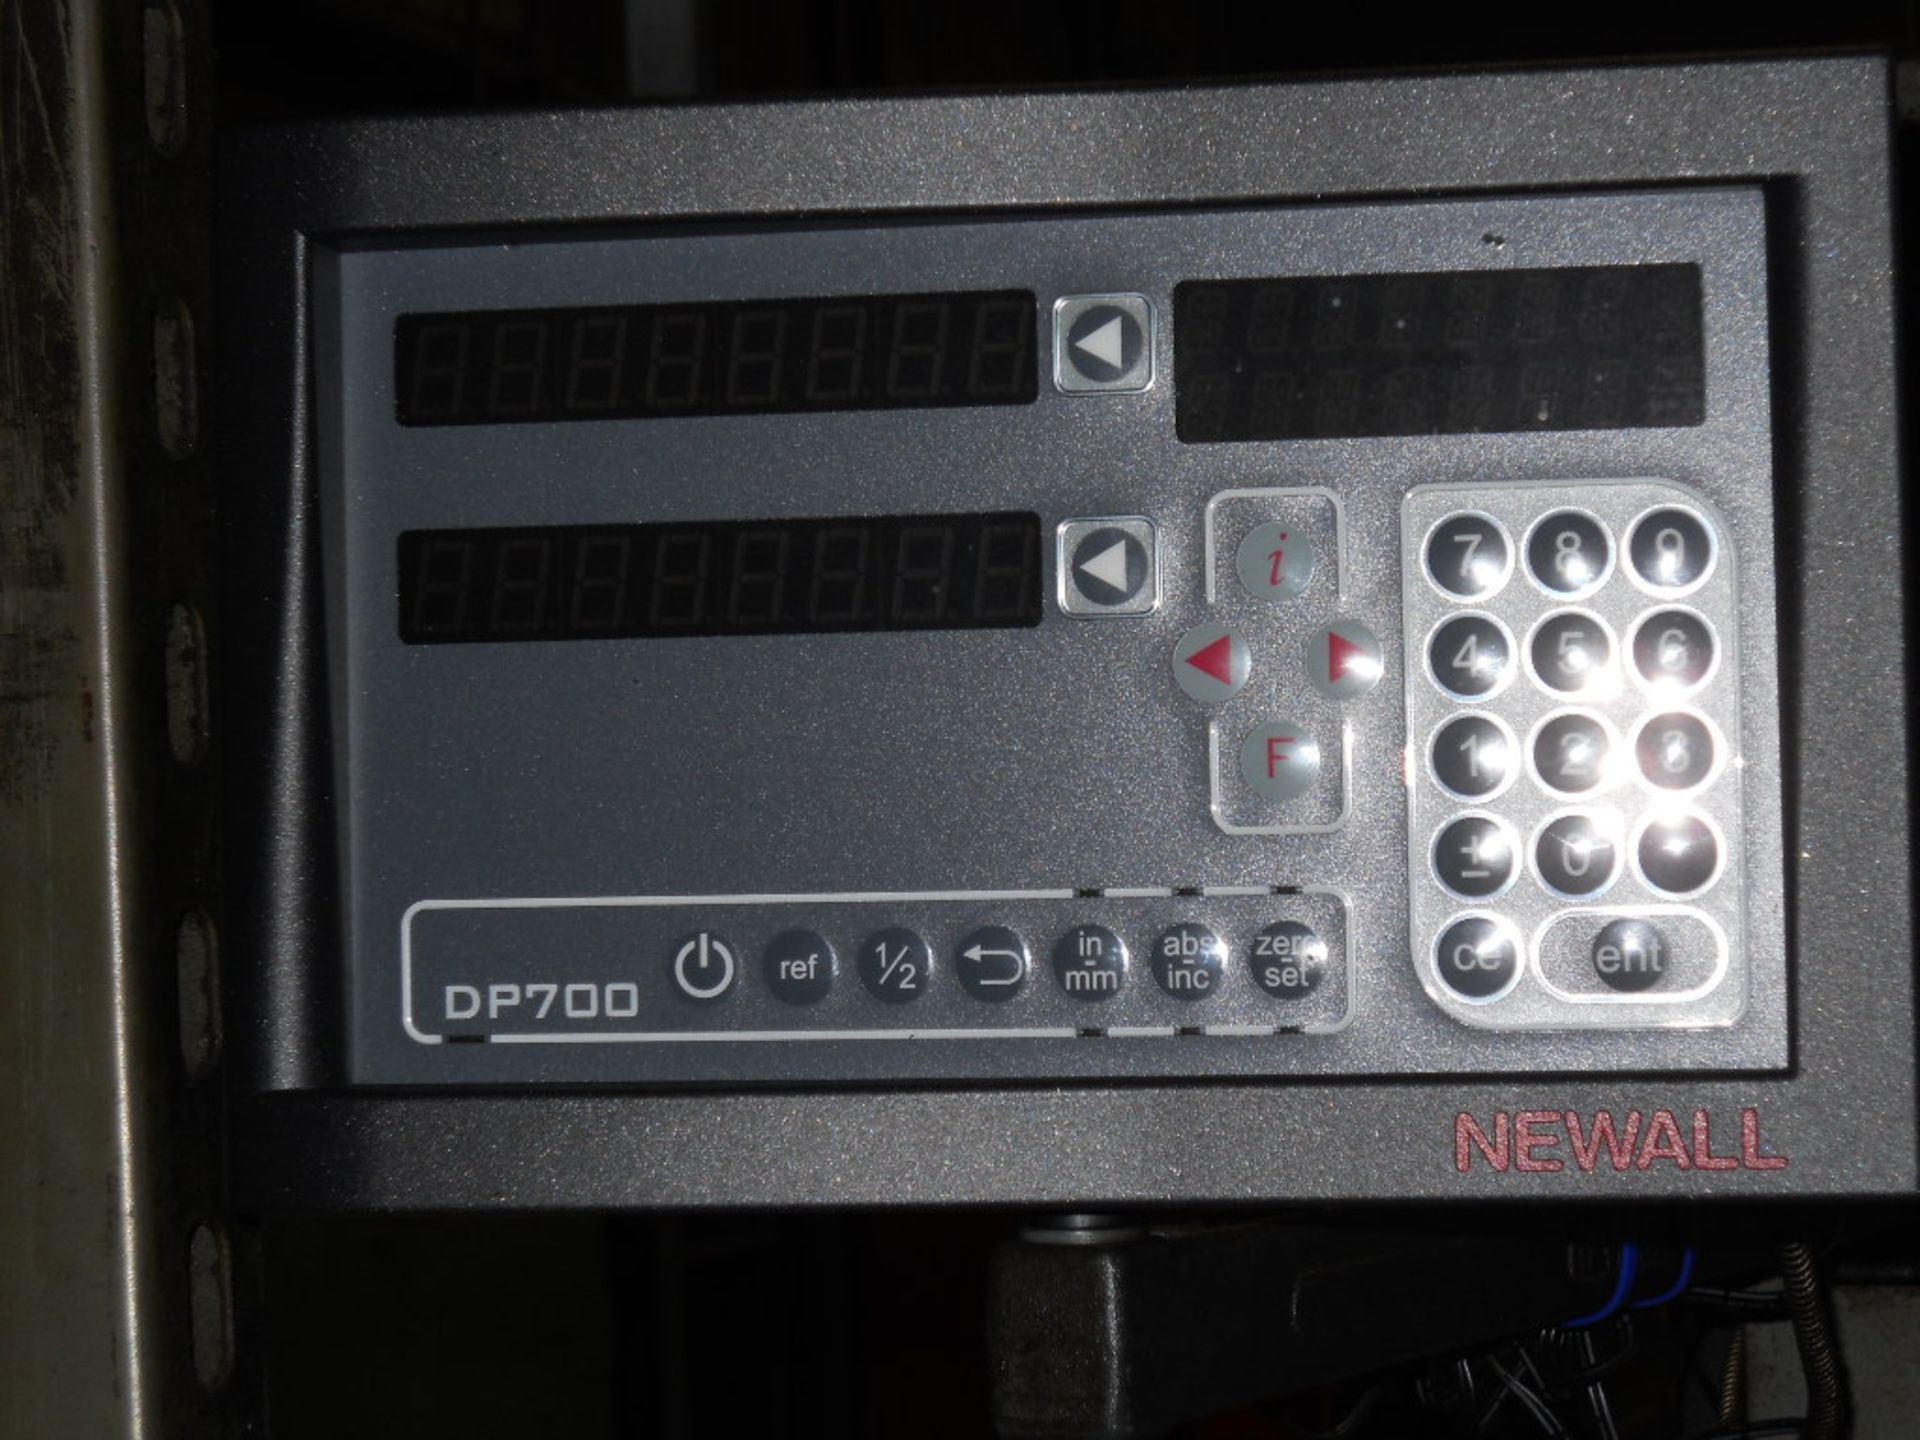 SHARP RADIAL DRILL PRESS, M/N RD1600, S/N 16938, 7.5 HP, 105 IN. X 72 IN. X 105 IN., 480 V - Image 5 of 5